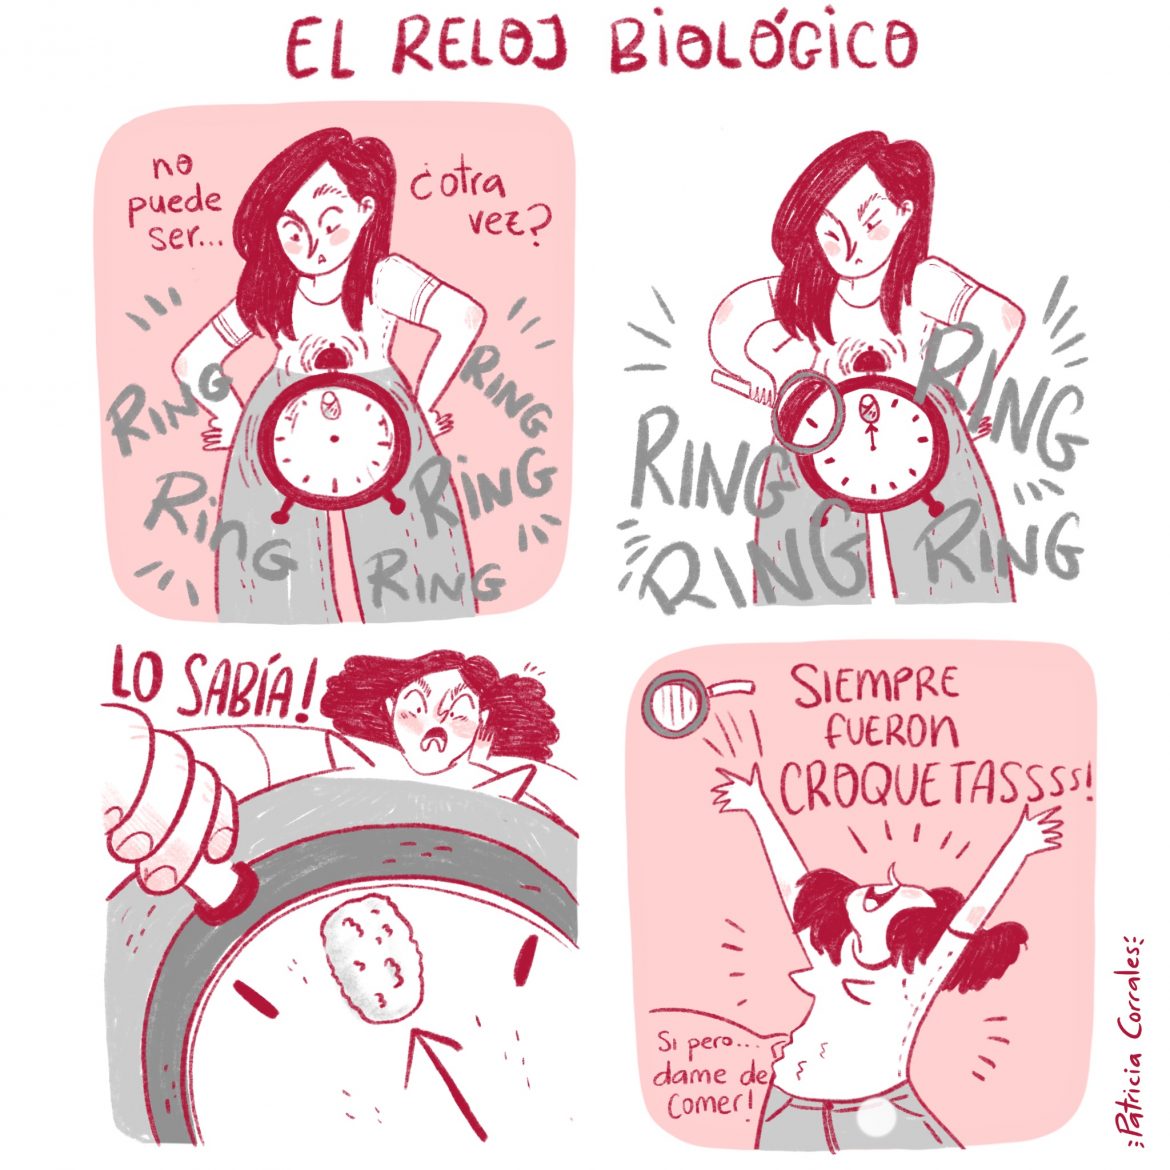 El_reloj_biologico_octubre_2020_proyectokahlo_feminismo